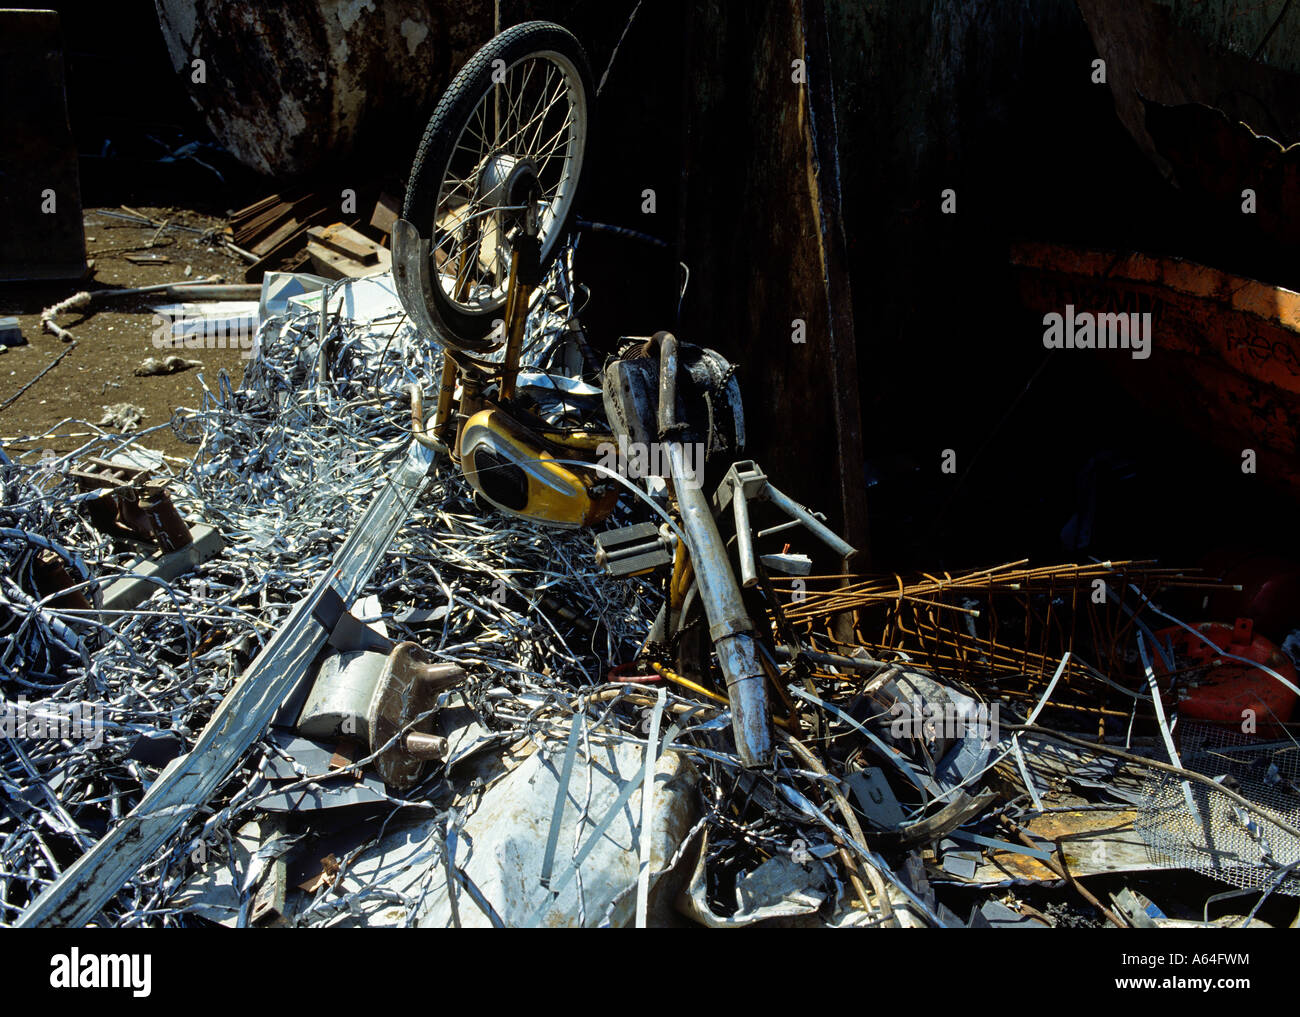 Moped-Wrack und Schrott zur Wiederverwertung Schrottplatz Stockfotografie -  Alamy